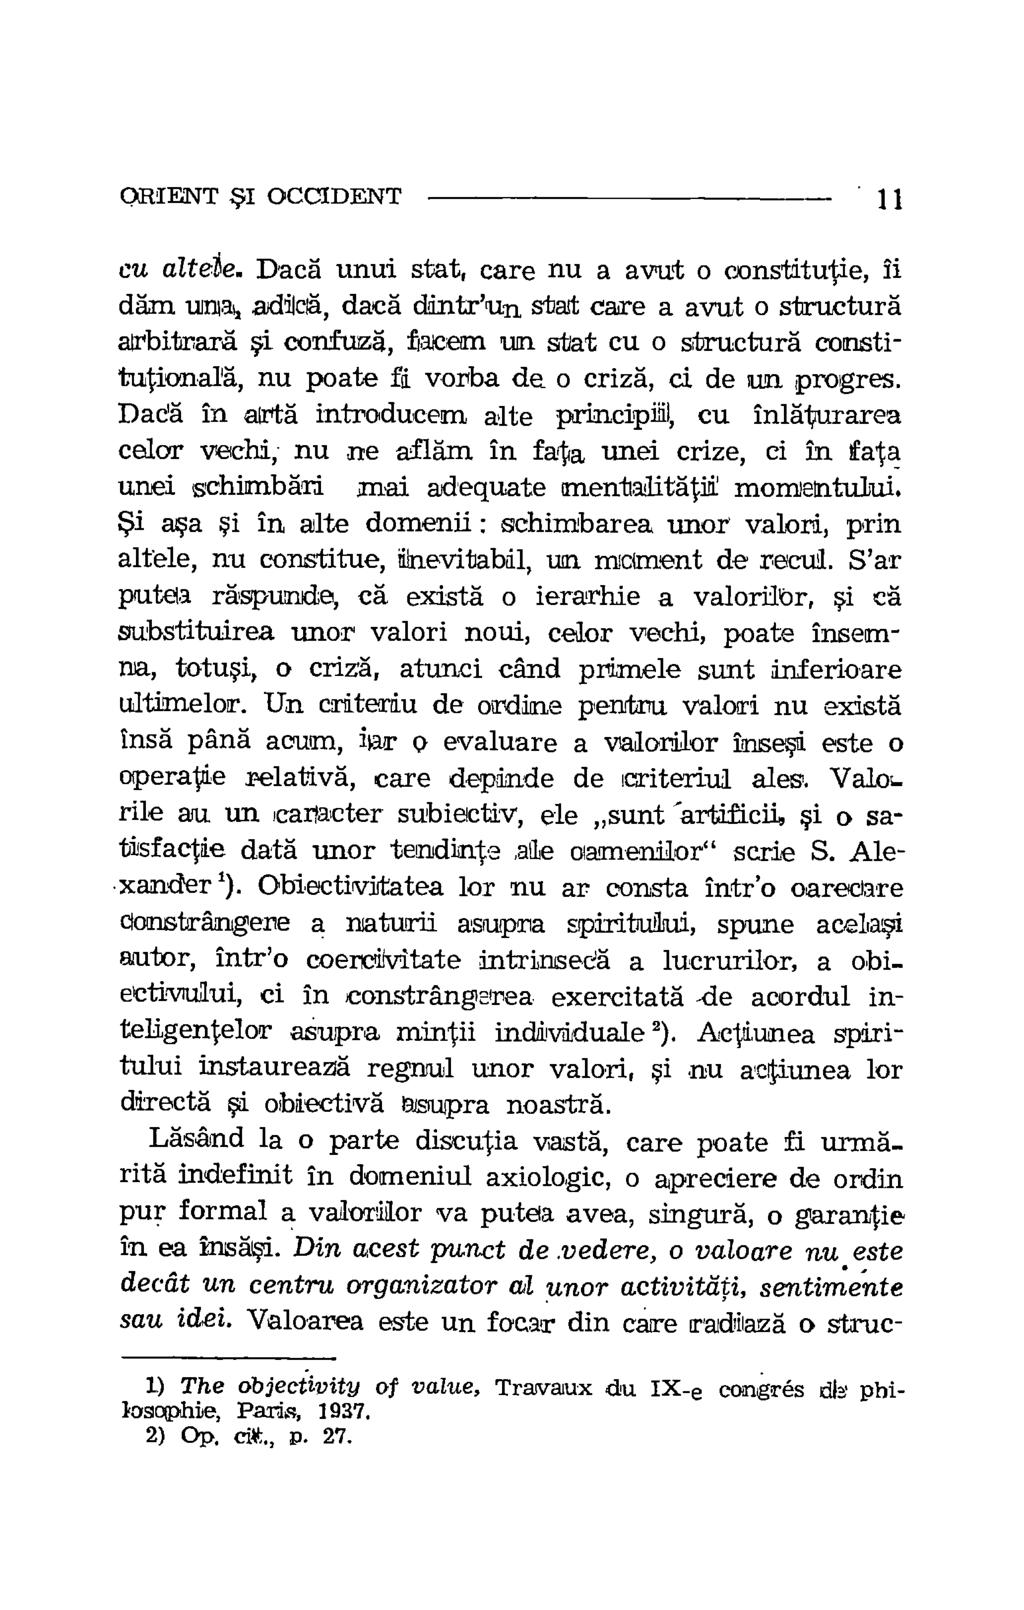 ORIENT *I OCCIDENT 11. 1) The objectivity of value, Traivaux du IX-e congres dlv losophie, Paris, 1937. 2) Op. cit., p. 27. cu altek.